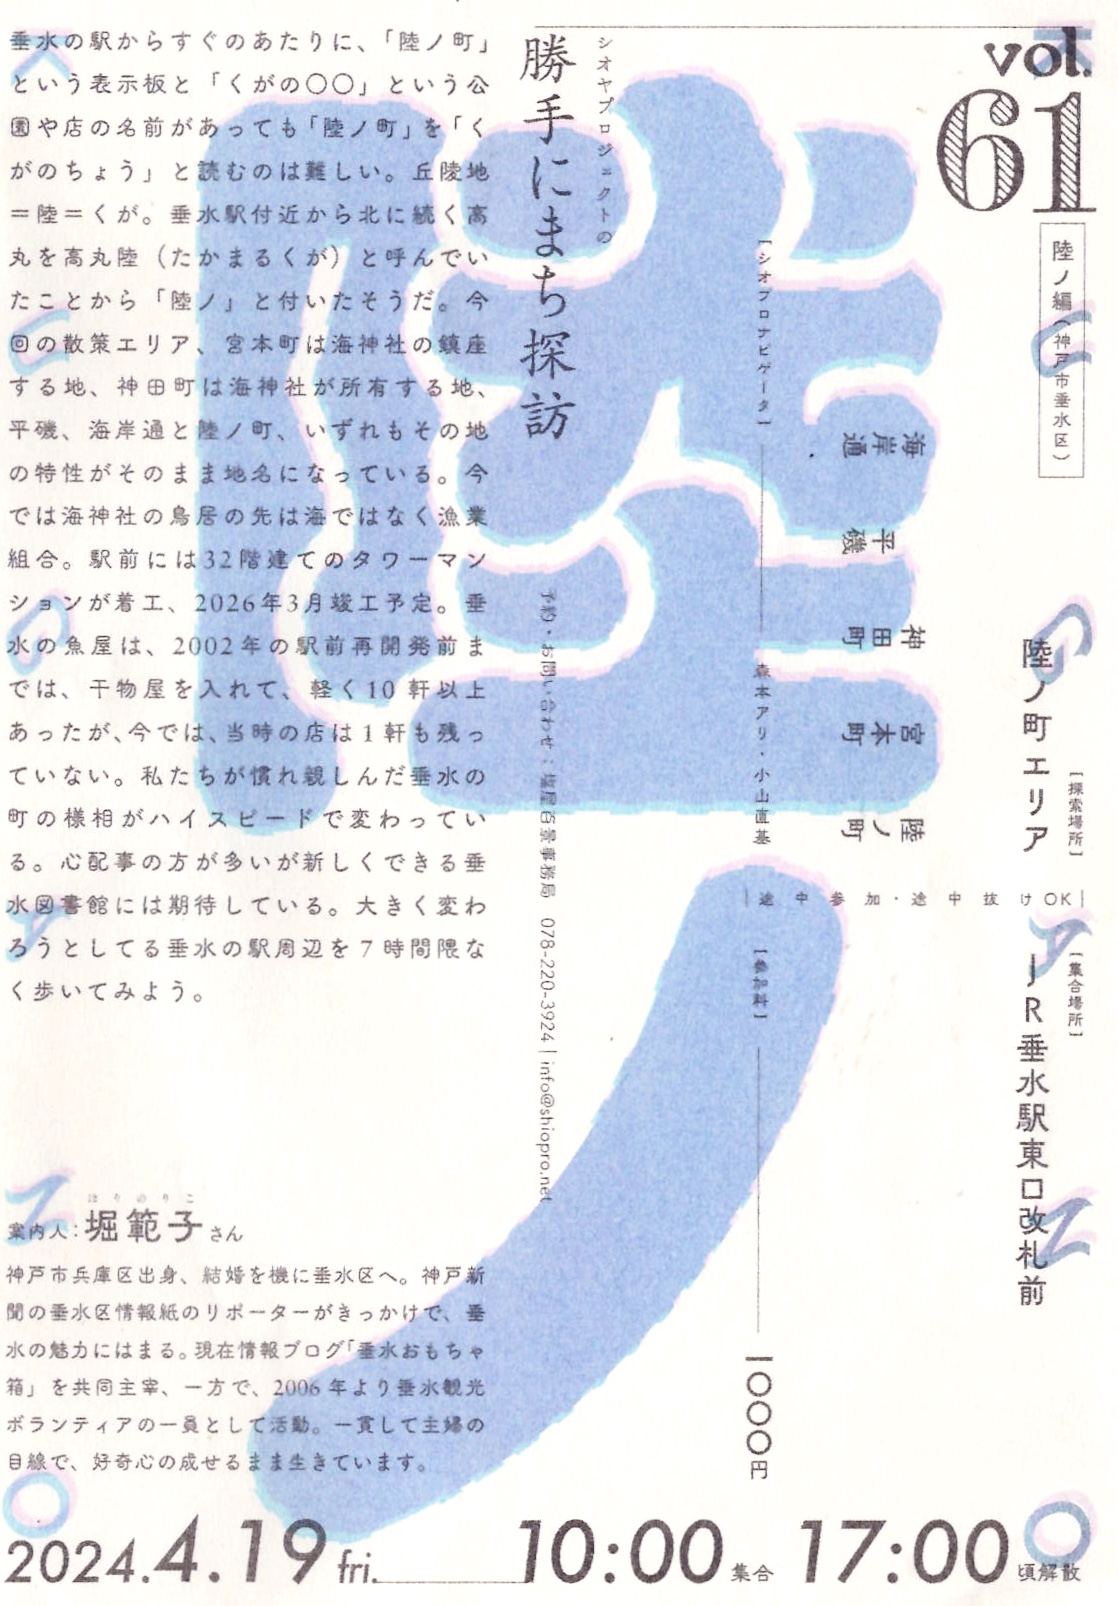 4/19(金) シオヤプロジェクトの勝手にまち探訪 vol.61 陸ノ編